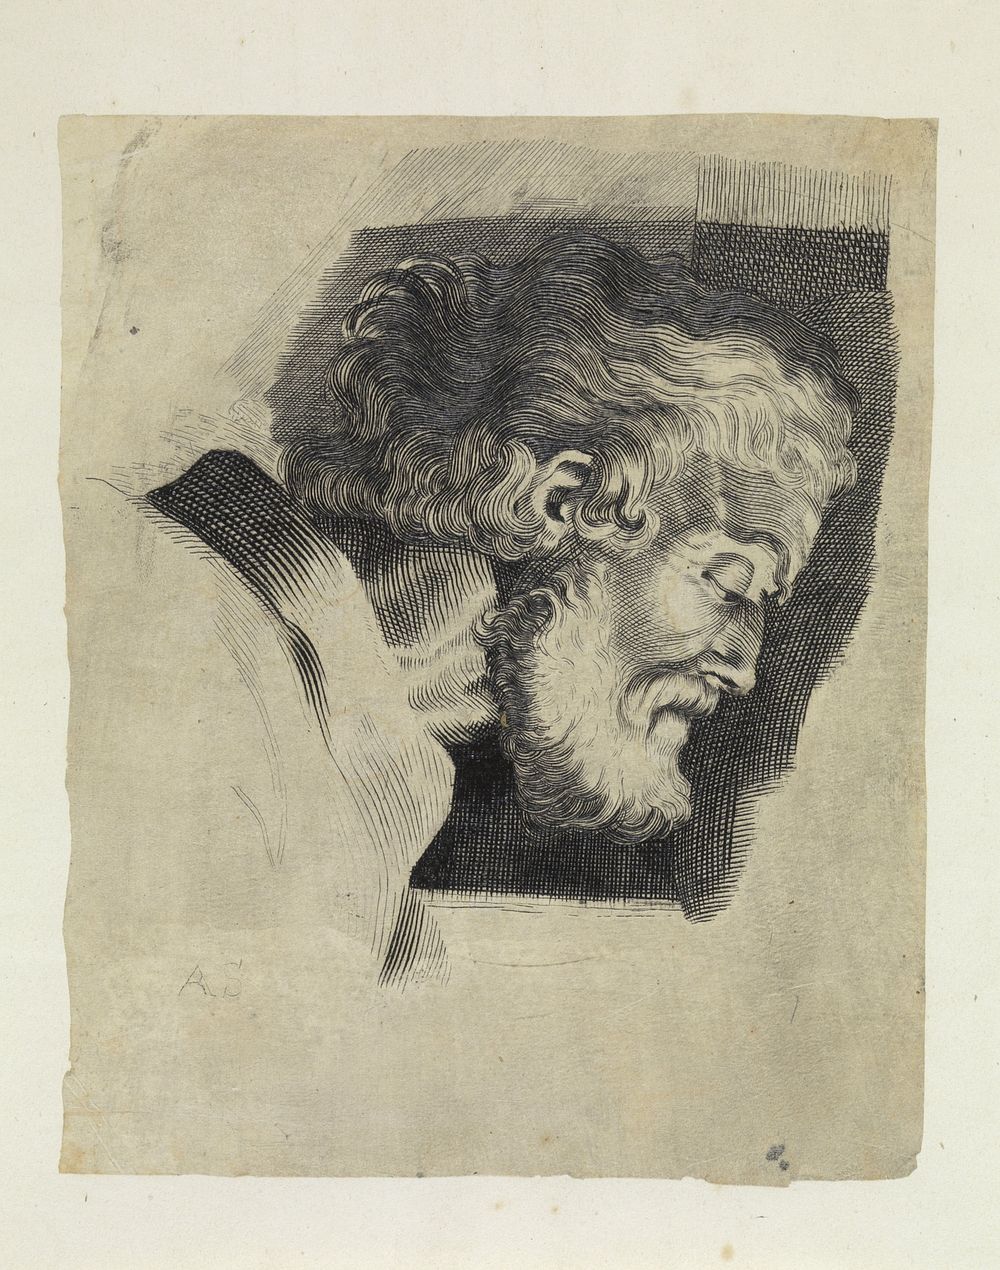 Kop van een grijsaard en profil (1831 - 1904) by Arnoud Schaepkens